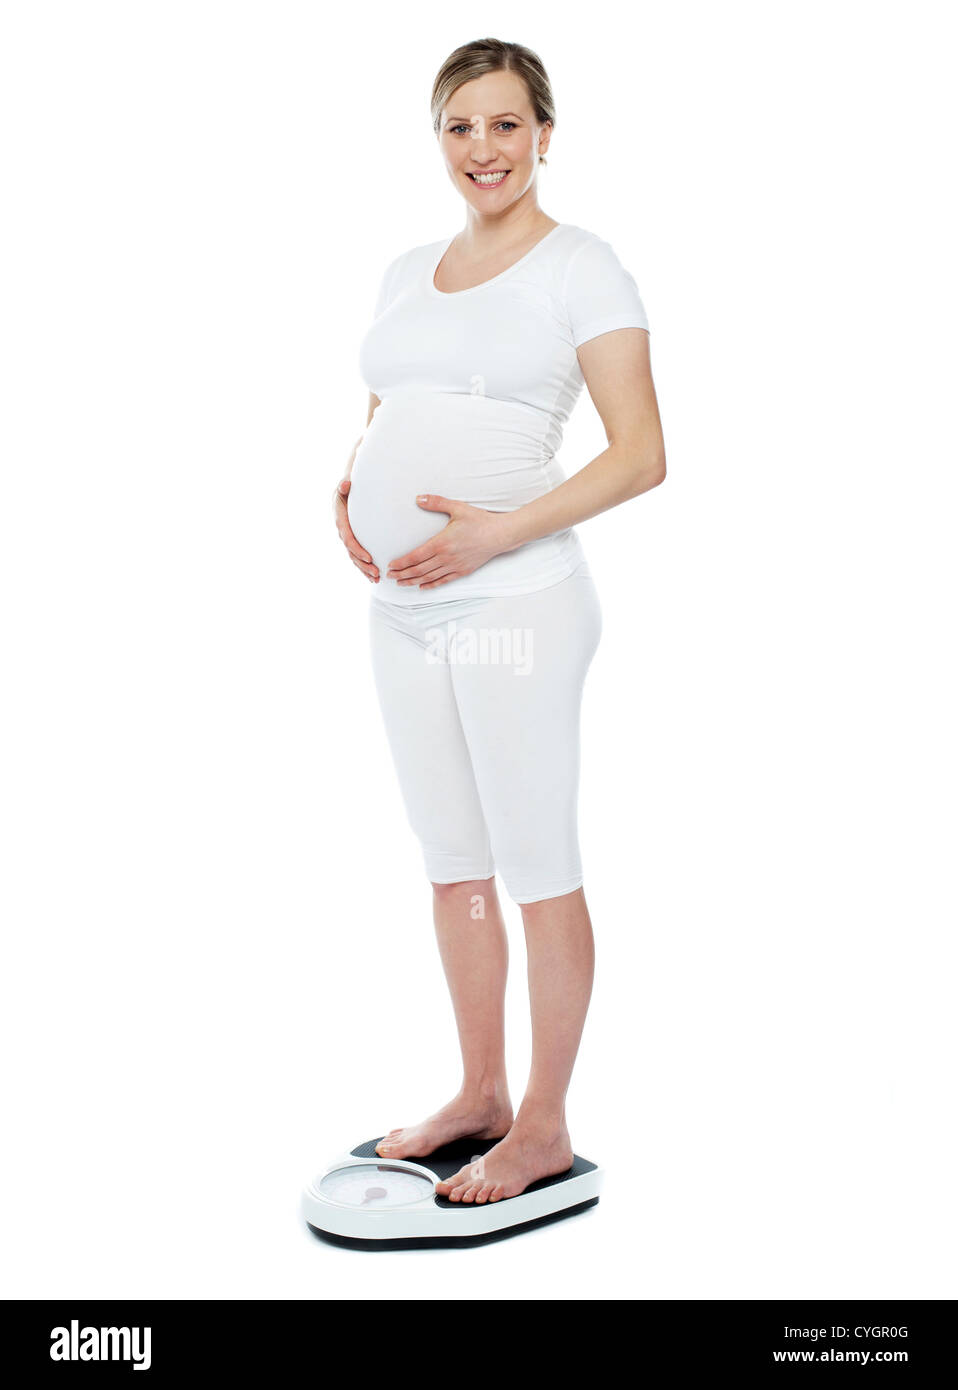 Femme enceinte la mesure de son poids au moyen de l'échelle de pesage. Mains sur l'estomac Banque D'Images